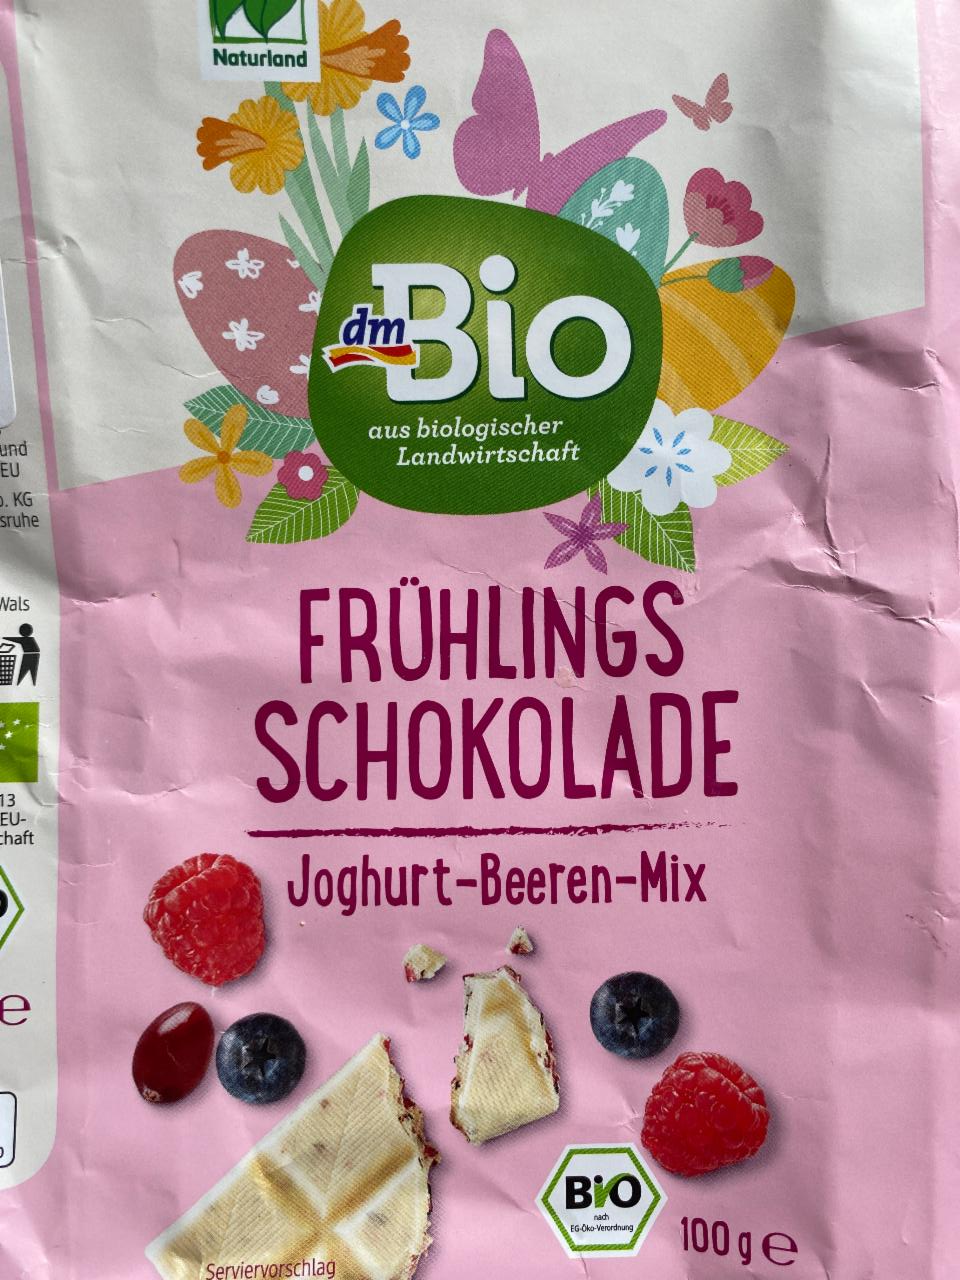 Fotografie - Frühlingsschokolade Joghurt-Beeren-Mix dmBio